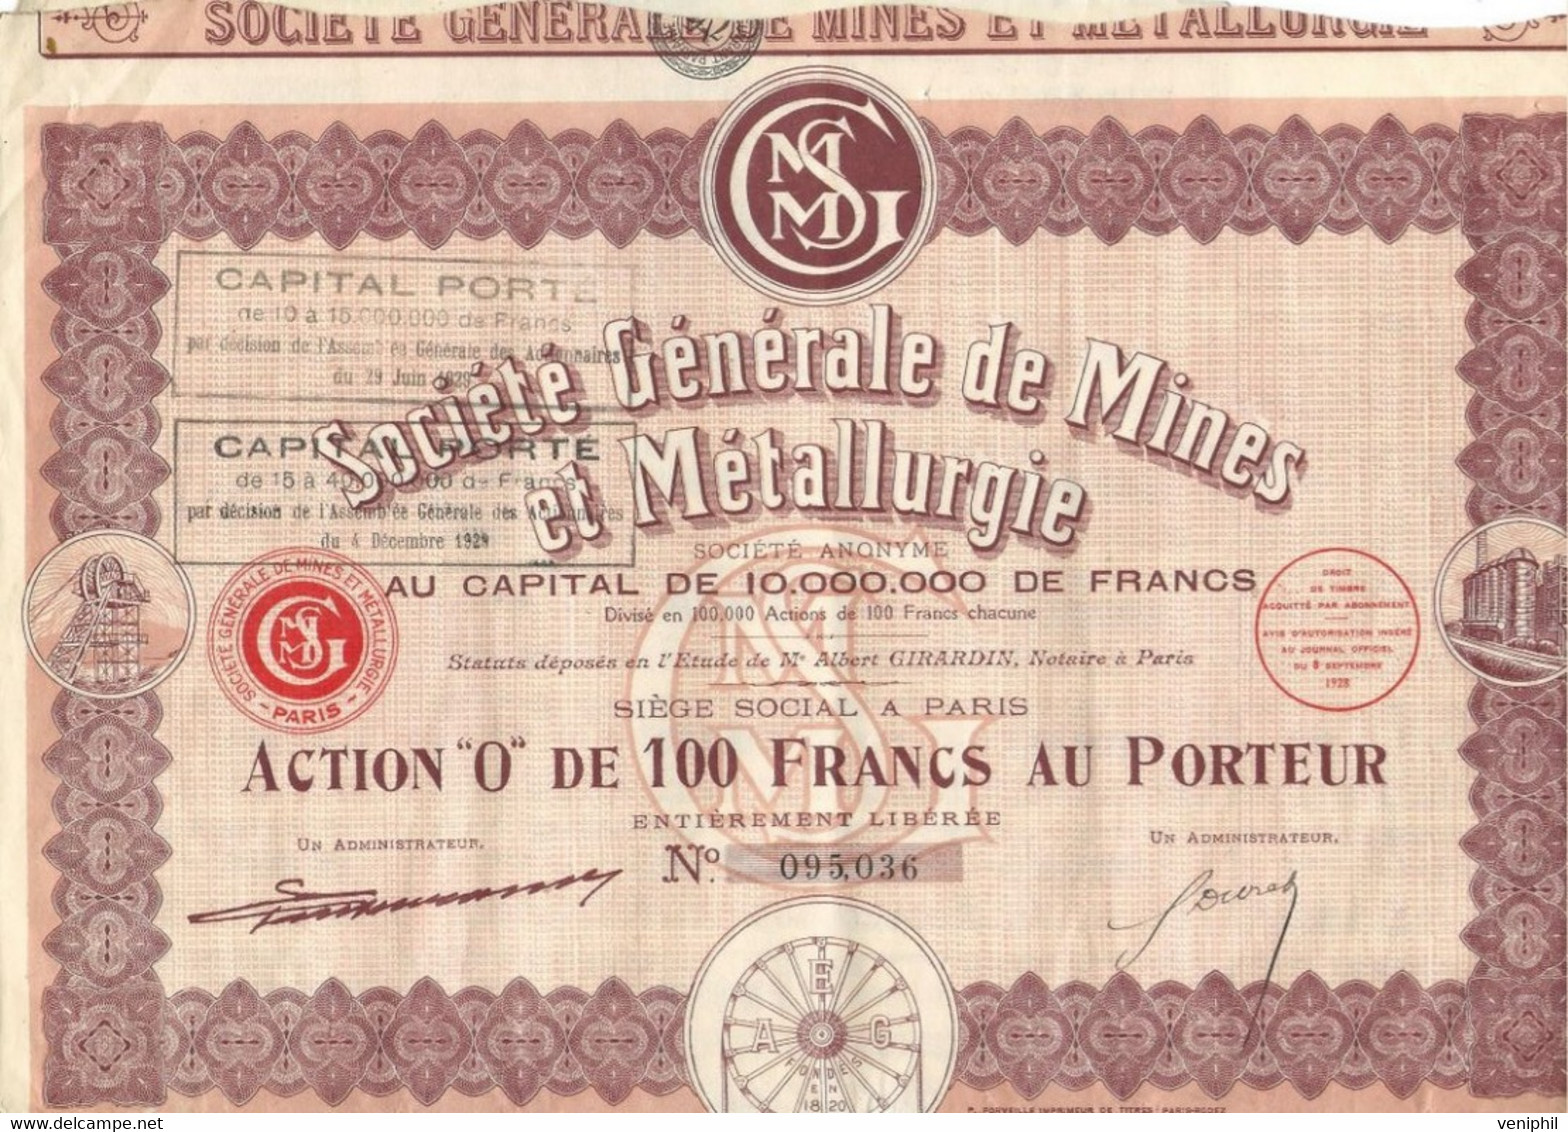 SOCIETE GENERALE DE MINES ET METALLURGIE -ACTION" 0 " DE 100 FRS -ANNEE 1928 - Mijnen